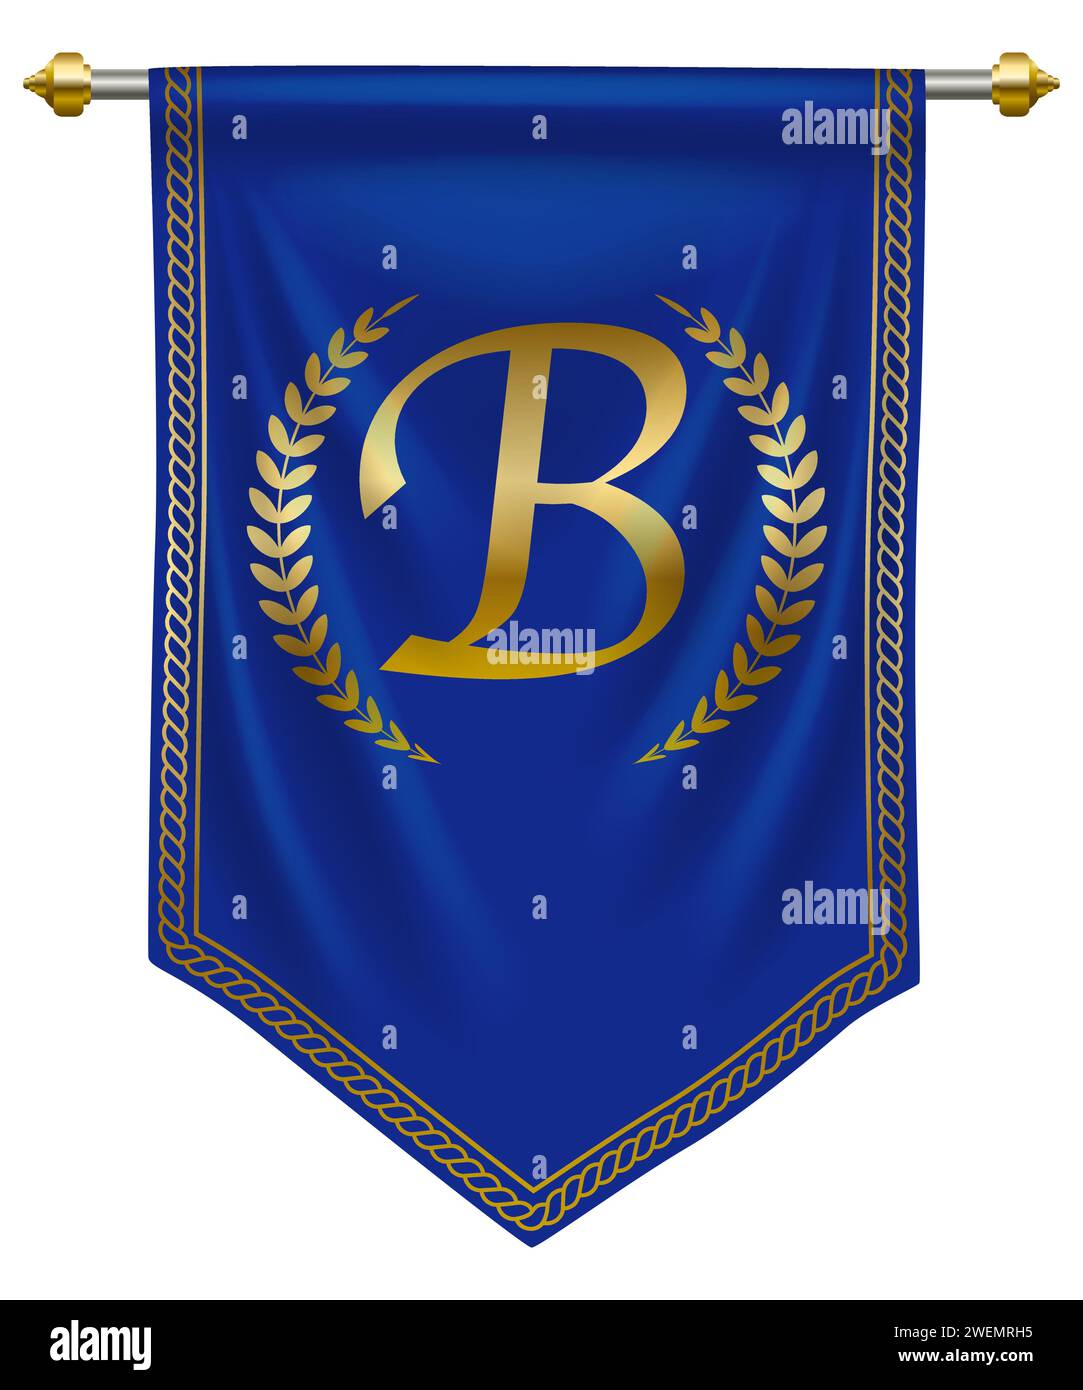 Elegante lettera B dorata su pennant Royal Blue per marchio o etichetta di alta qualità. Illustrazione vettoriale Illustrazione Vettoriale